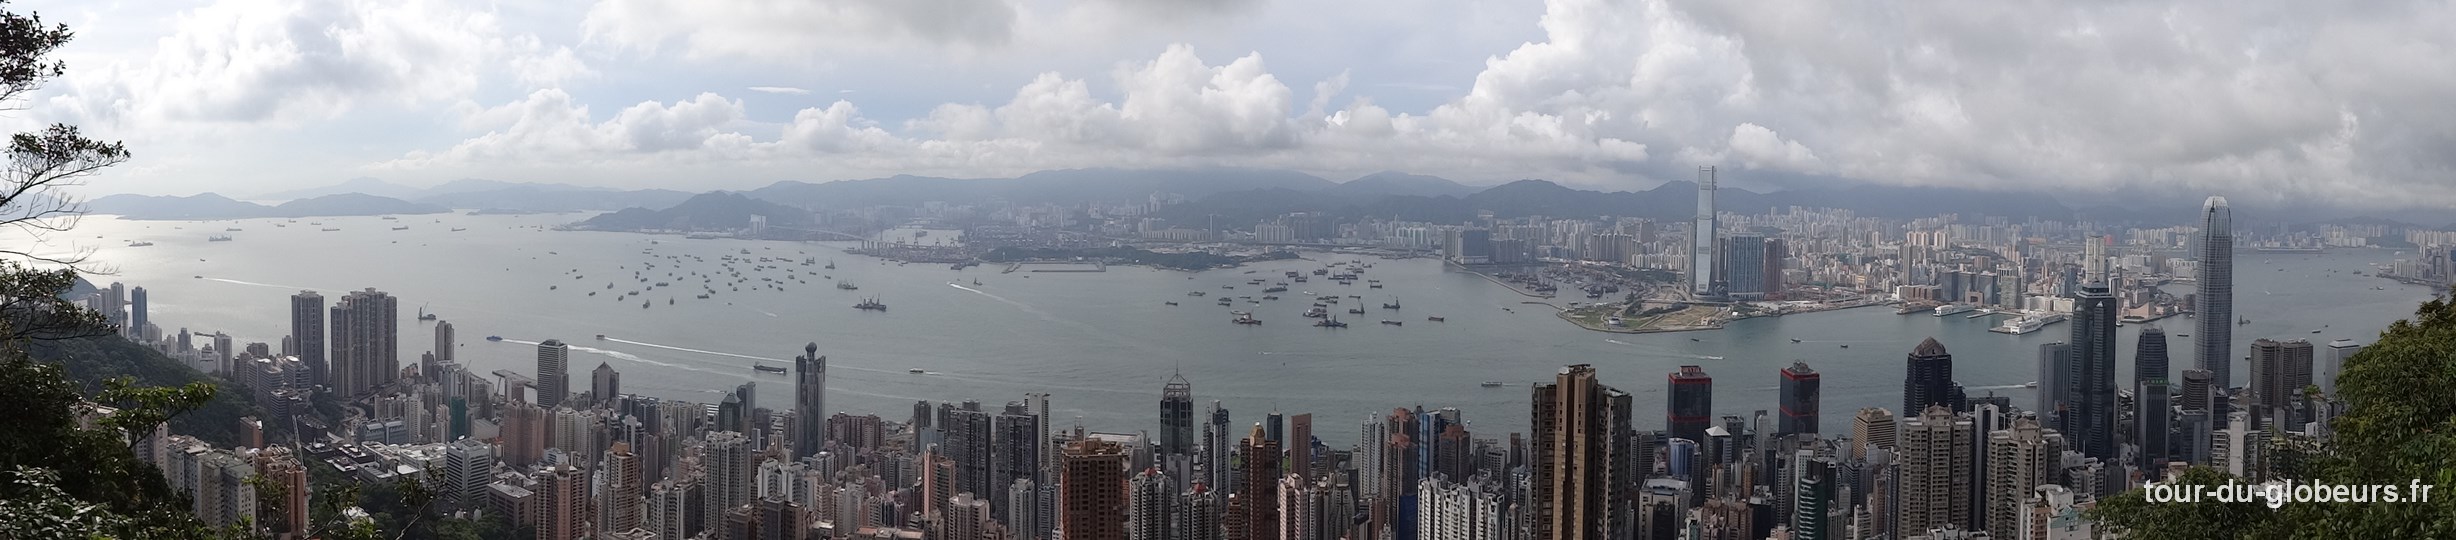 Hong Kong – vue sur la ville depuis le Victoria Peak